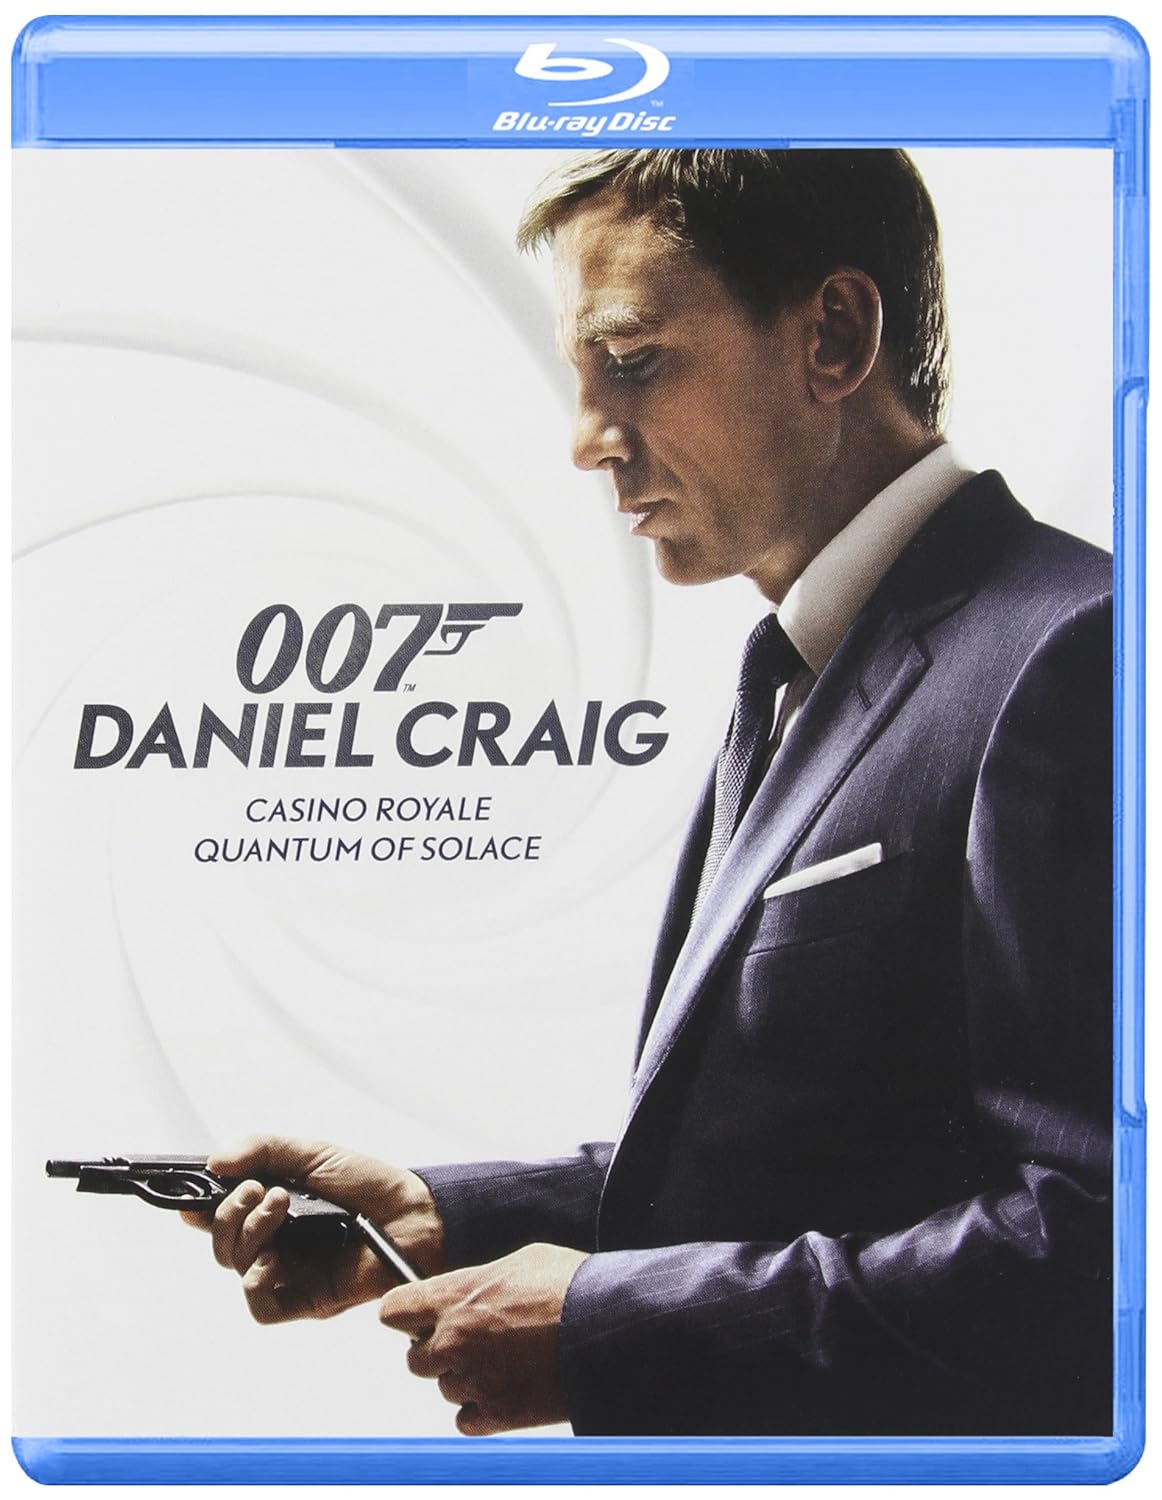 James Bond Films: Casino Royale/Quantum Of Solace